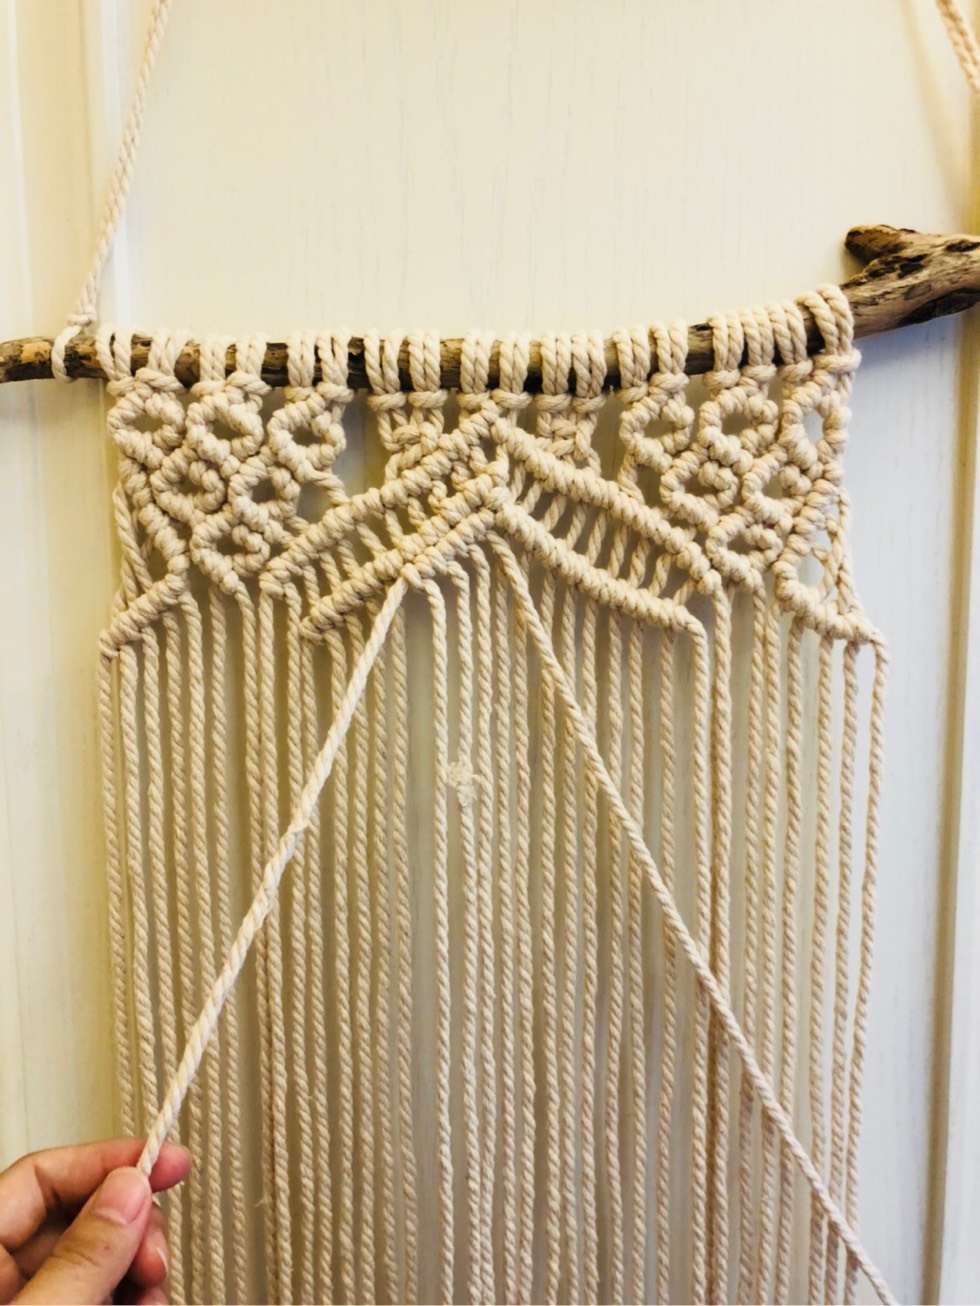 粗棉线编织作品图片